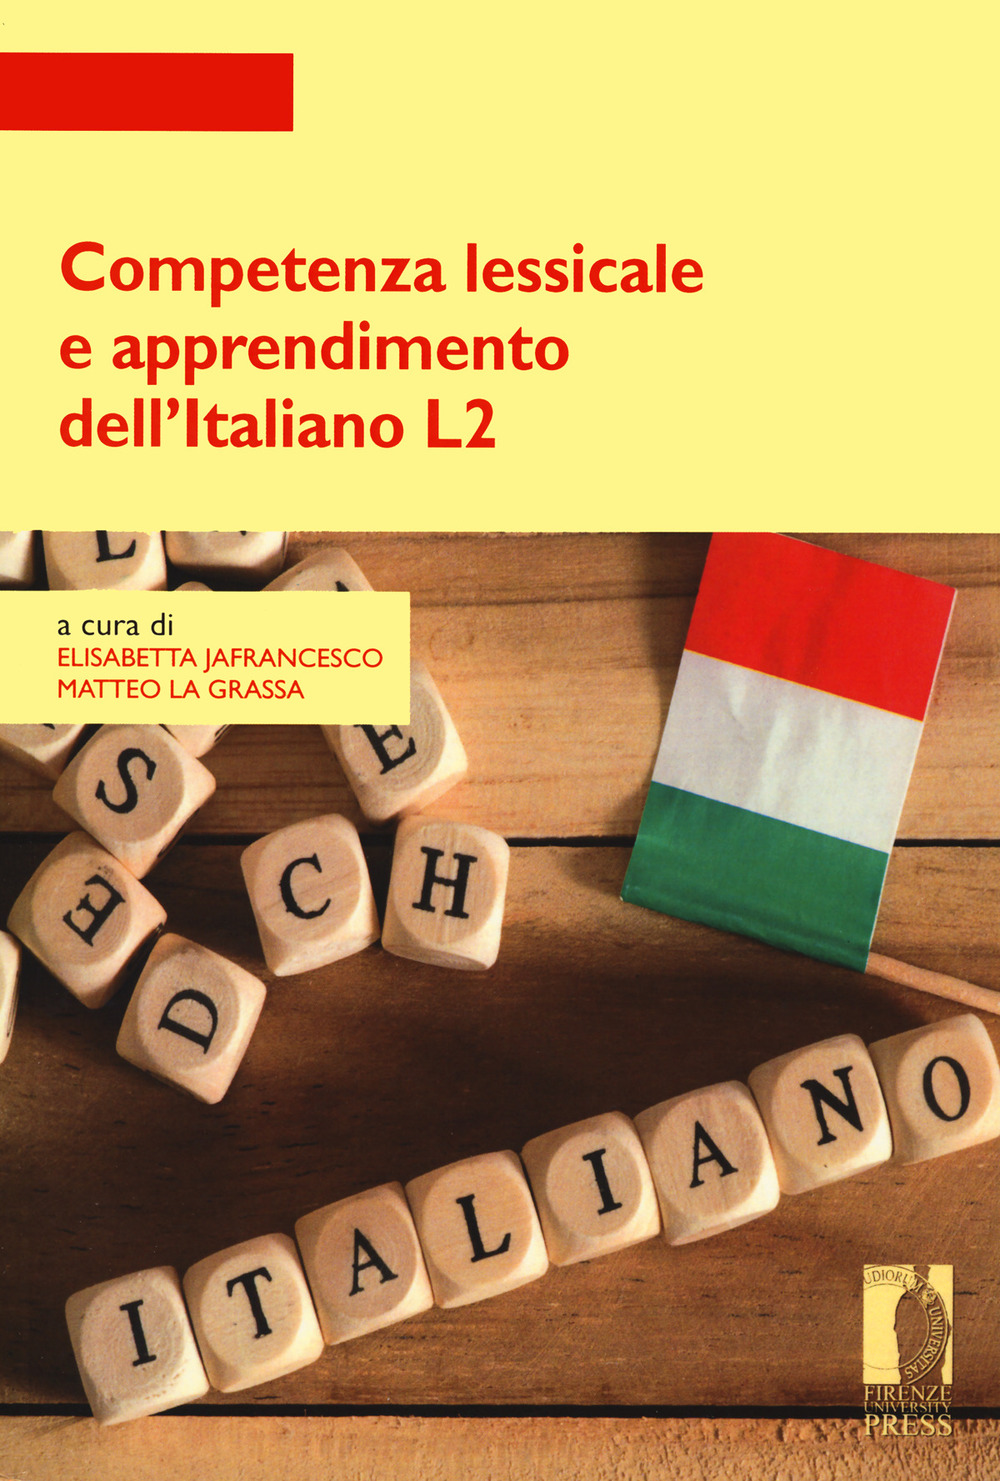 Competenza lessicale e apprendimento dell'italiano L2